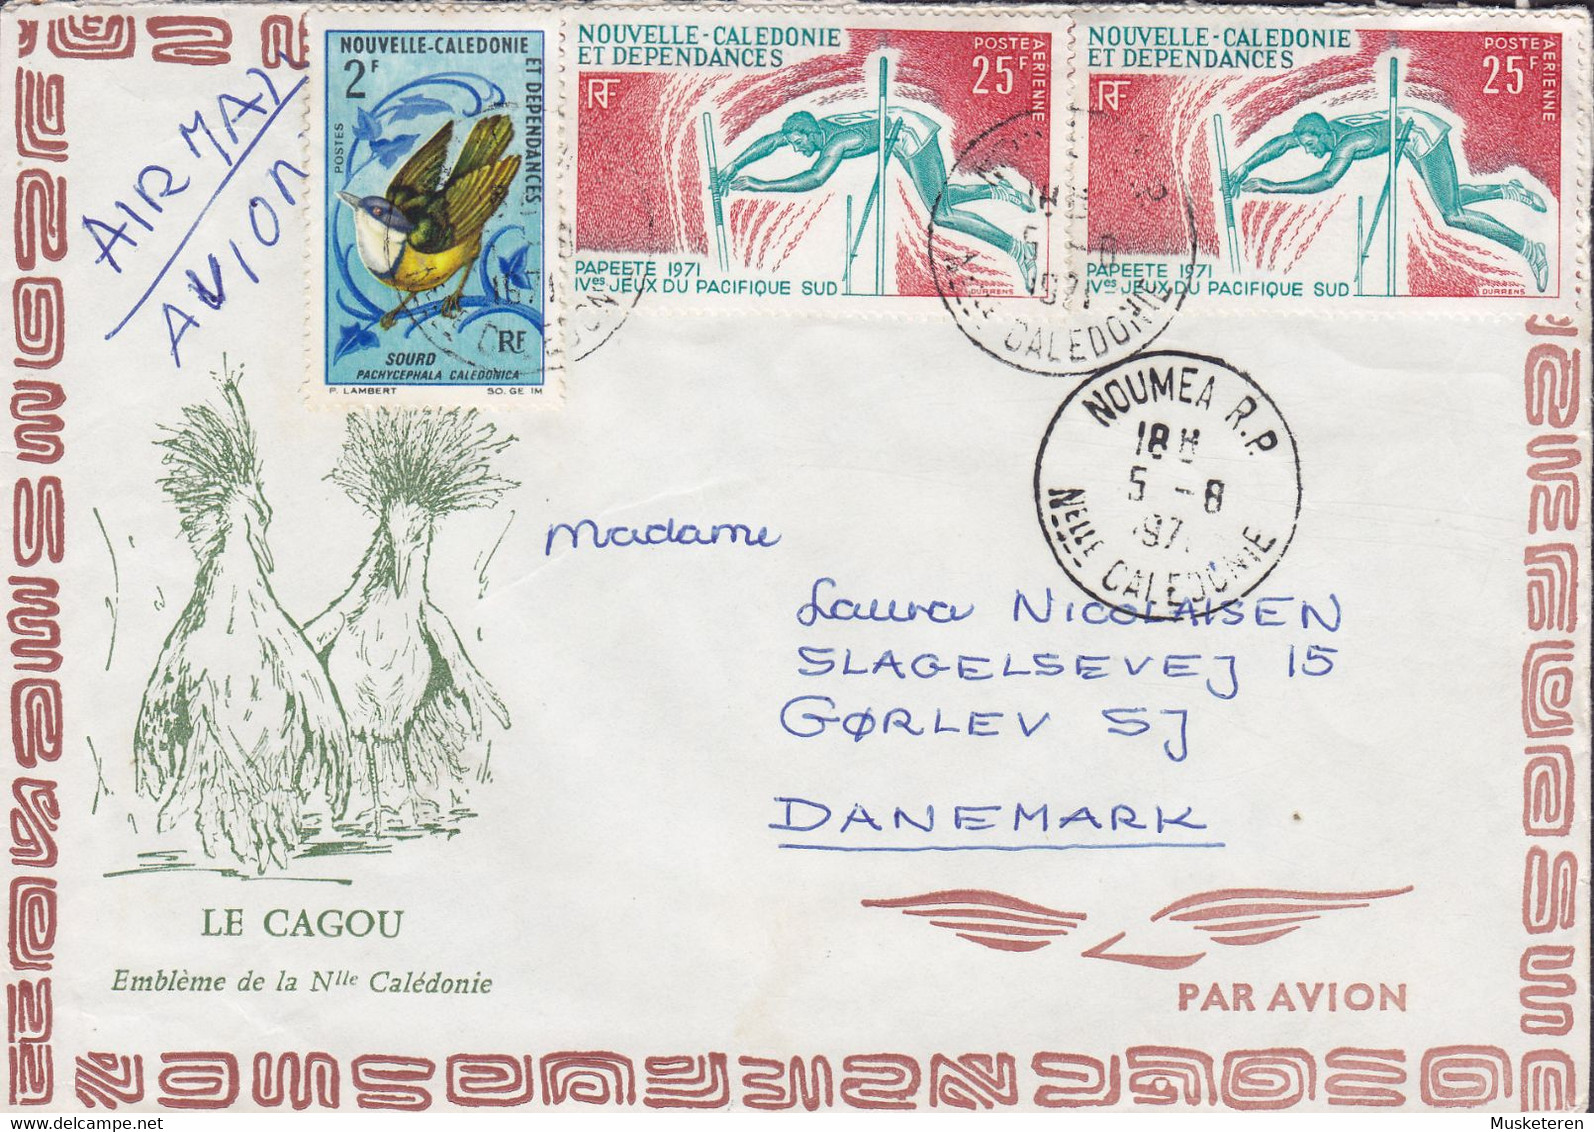 New Caledonia Nouvelle Caledonie LA CAGAU Cachet NOUMEA 1971 Cover Lettre Denmark Bird Vogel Oiseau 2x Jeux Pacifique - Covers & Documents